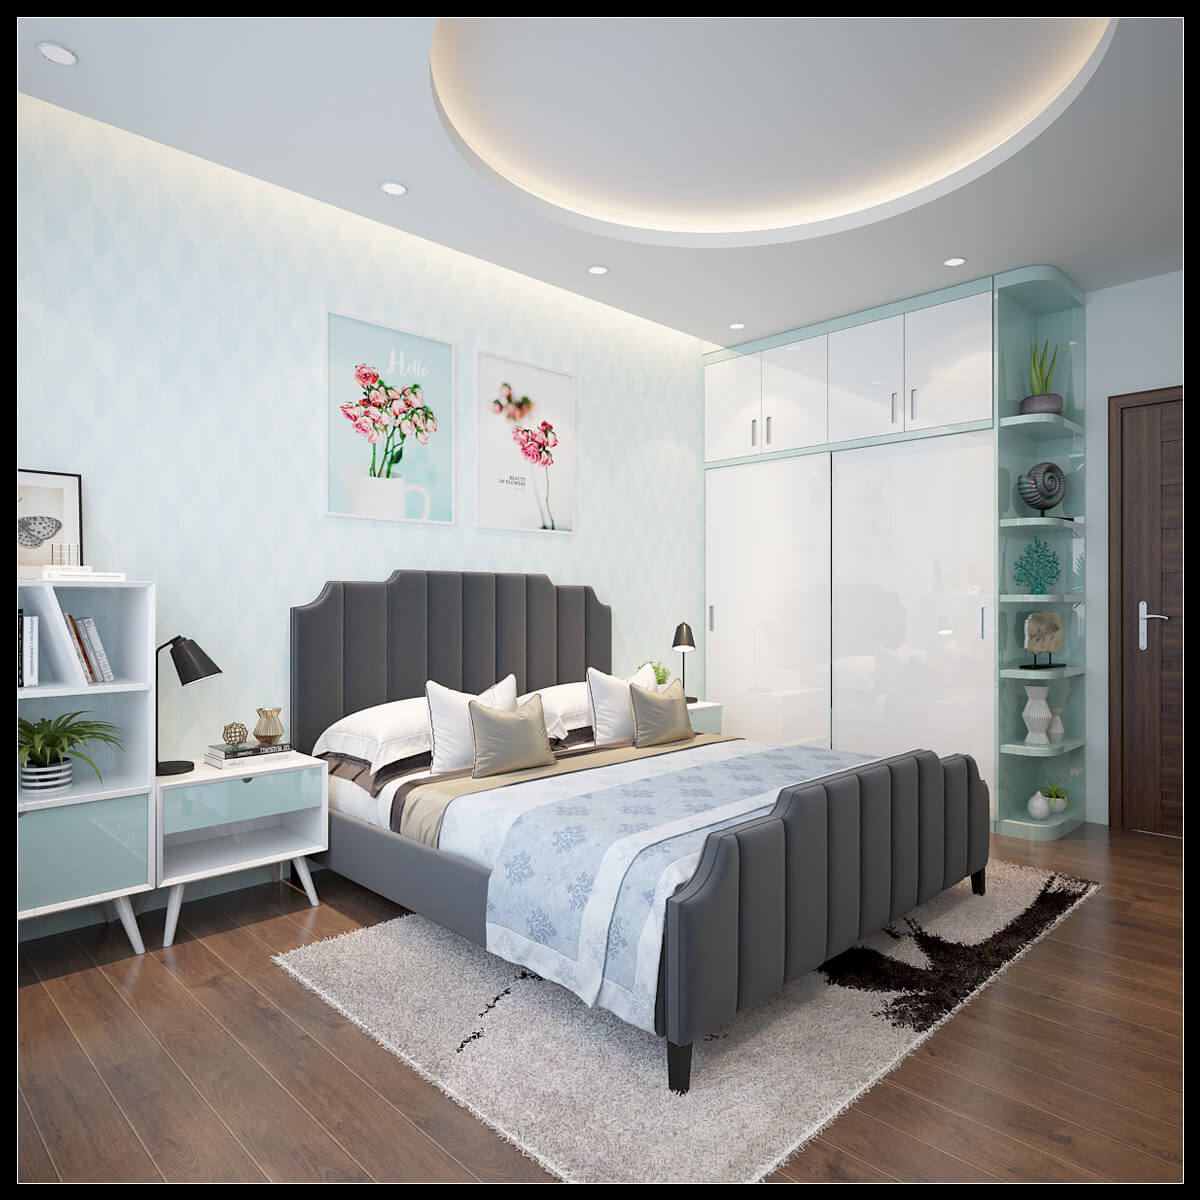 Hình ảnh: Không gian phòng ngủ 1 với tone màu xanh làm chủ đạo